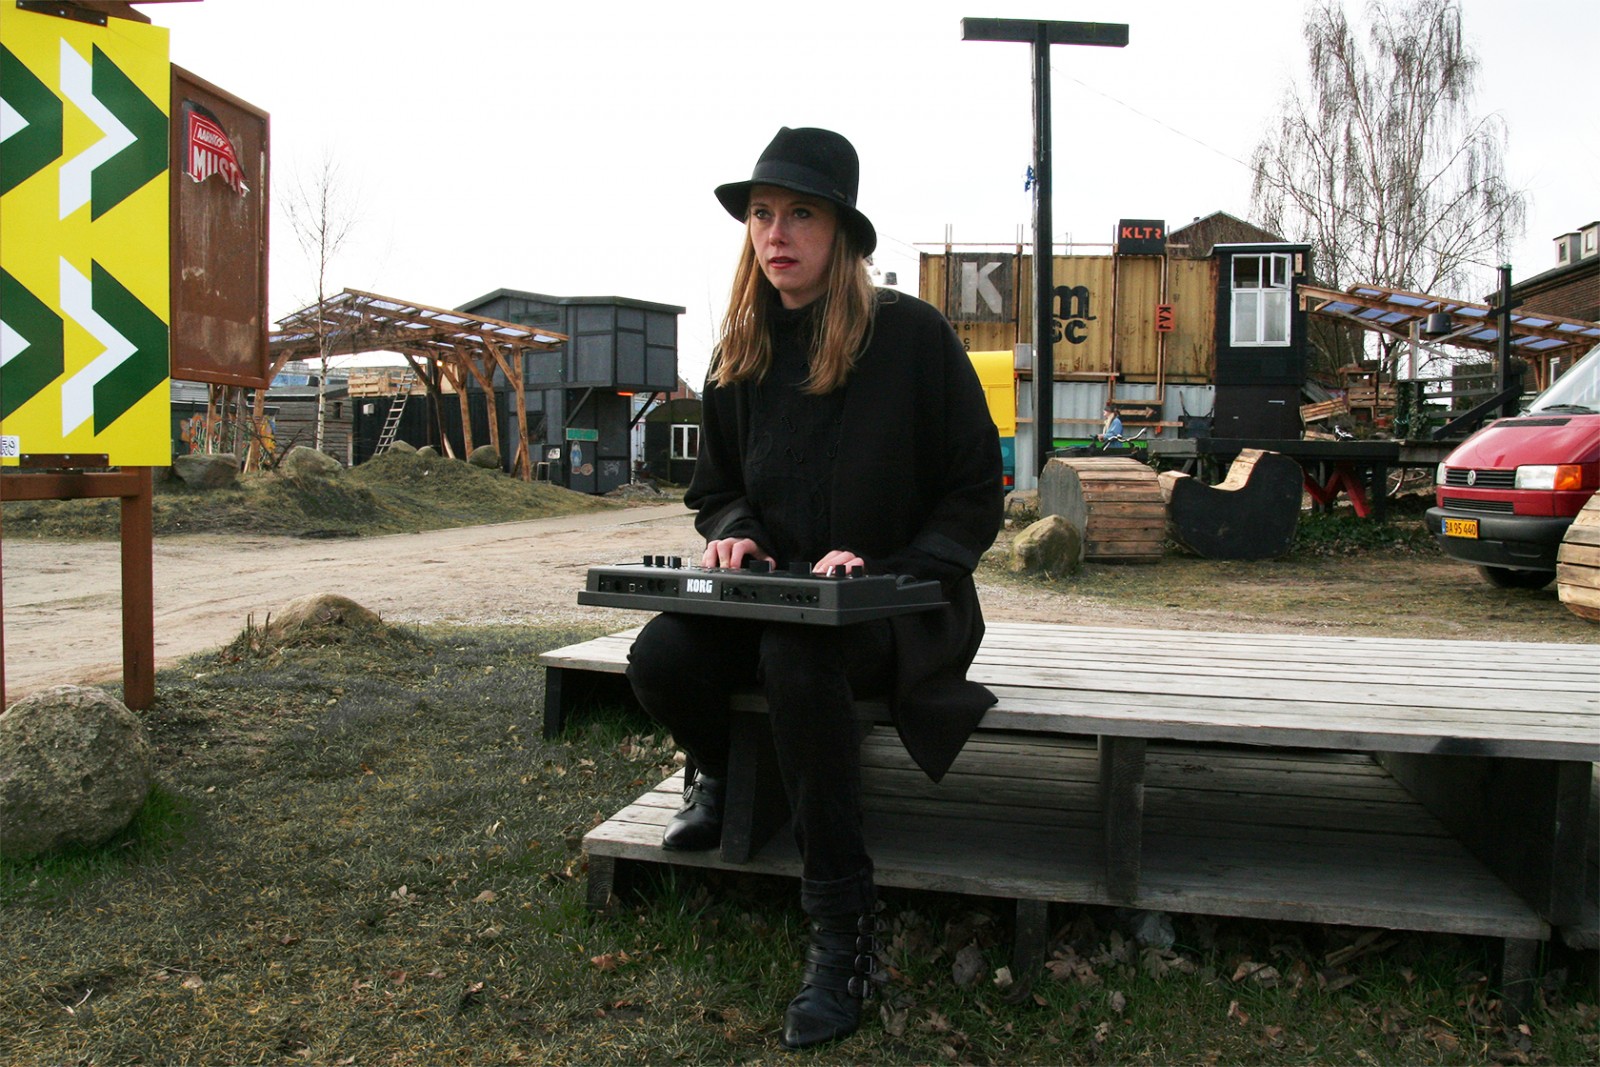 Kæmper med musikken som sit våben</br>Kamille Lindholm bruger musikken i sin kamp for at få mere kærlighed i verden.</br>Foto: Sixten Therkildsen